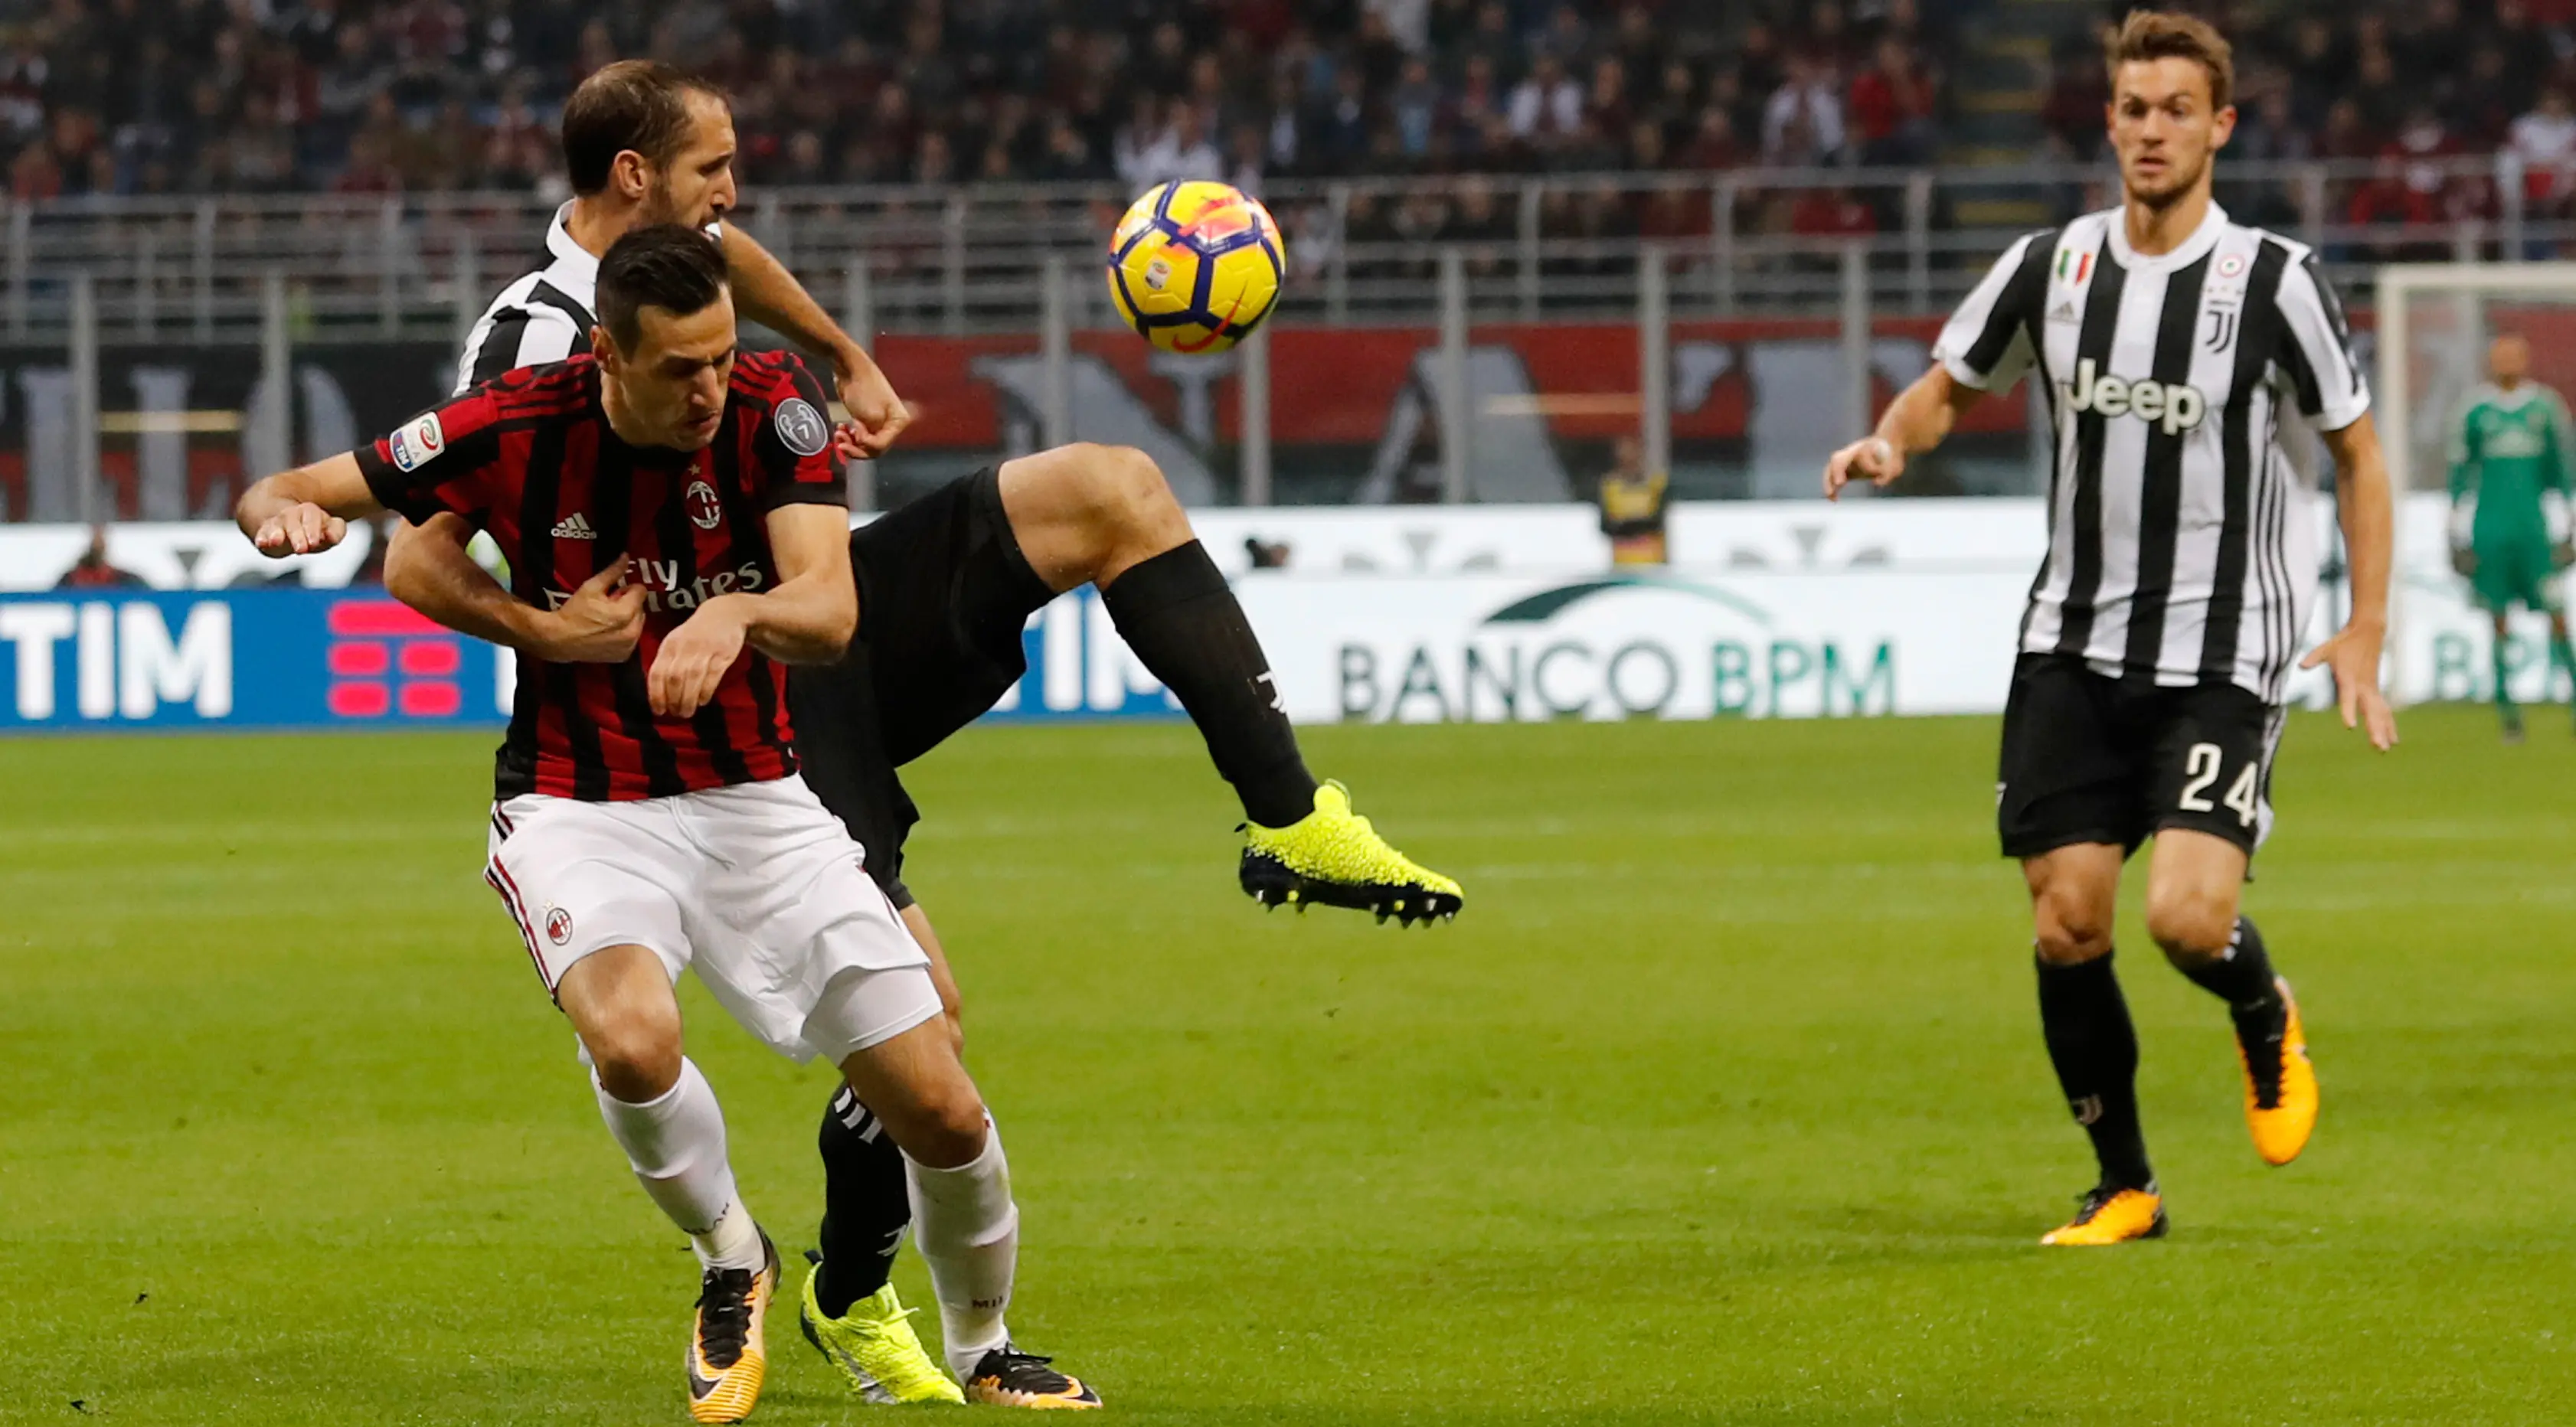 Pengalaman Gennaro Gattuso sebagai pemain dipercaya berguna untuk memotivasi mental pemain AC Milan yang tengah terpuruk. (AP/Antonio Calanni)